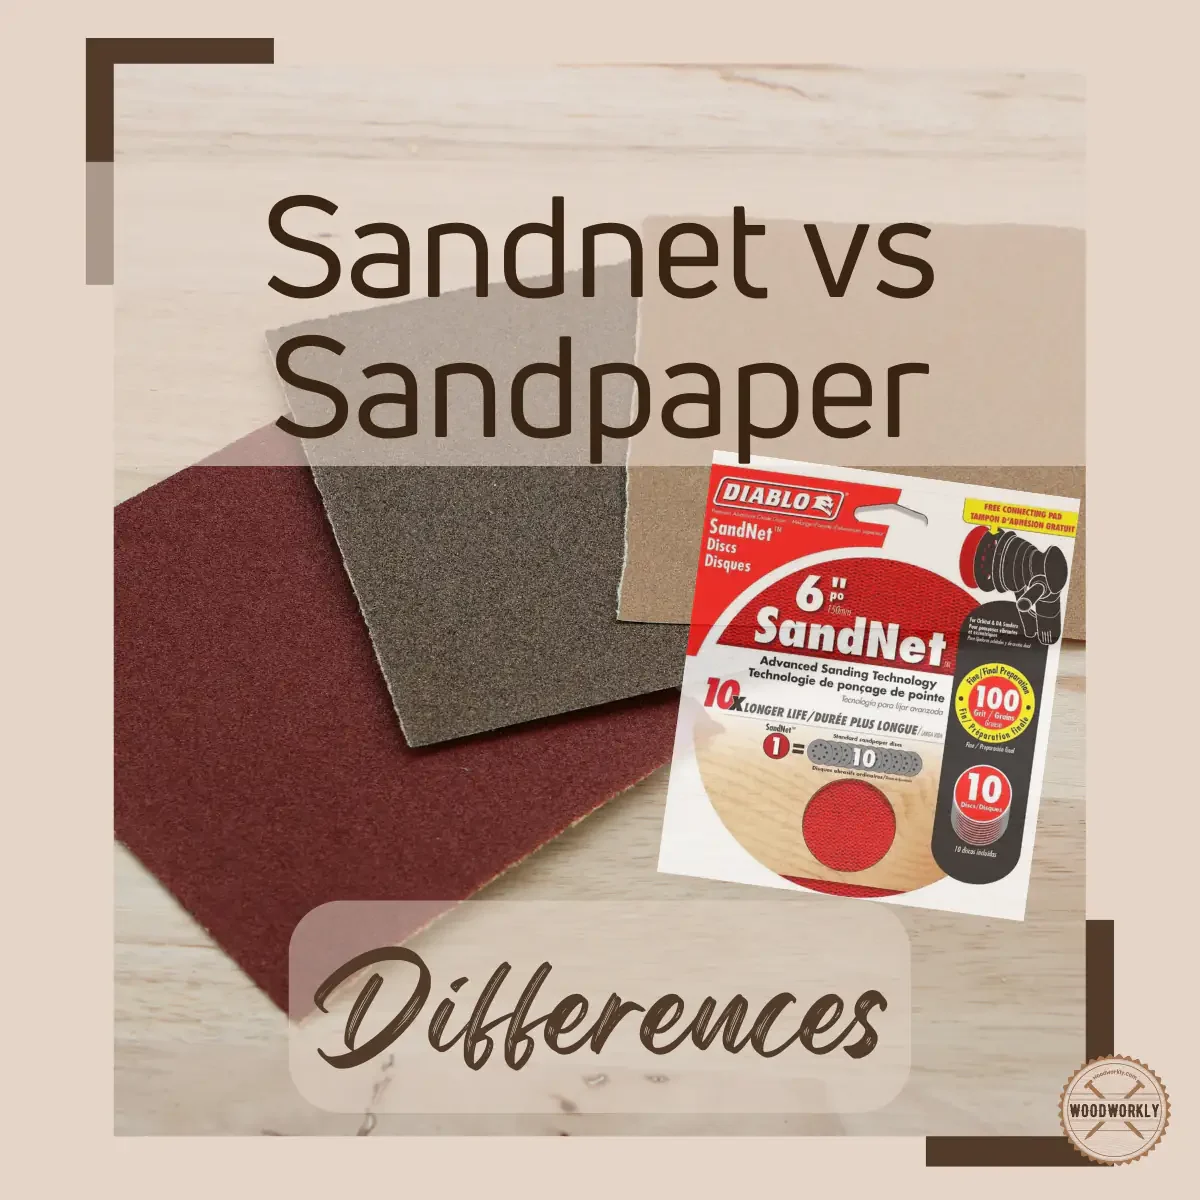 sandnet vs sandpaper